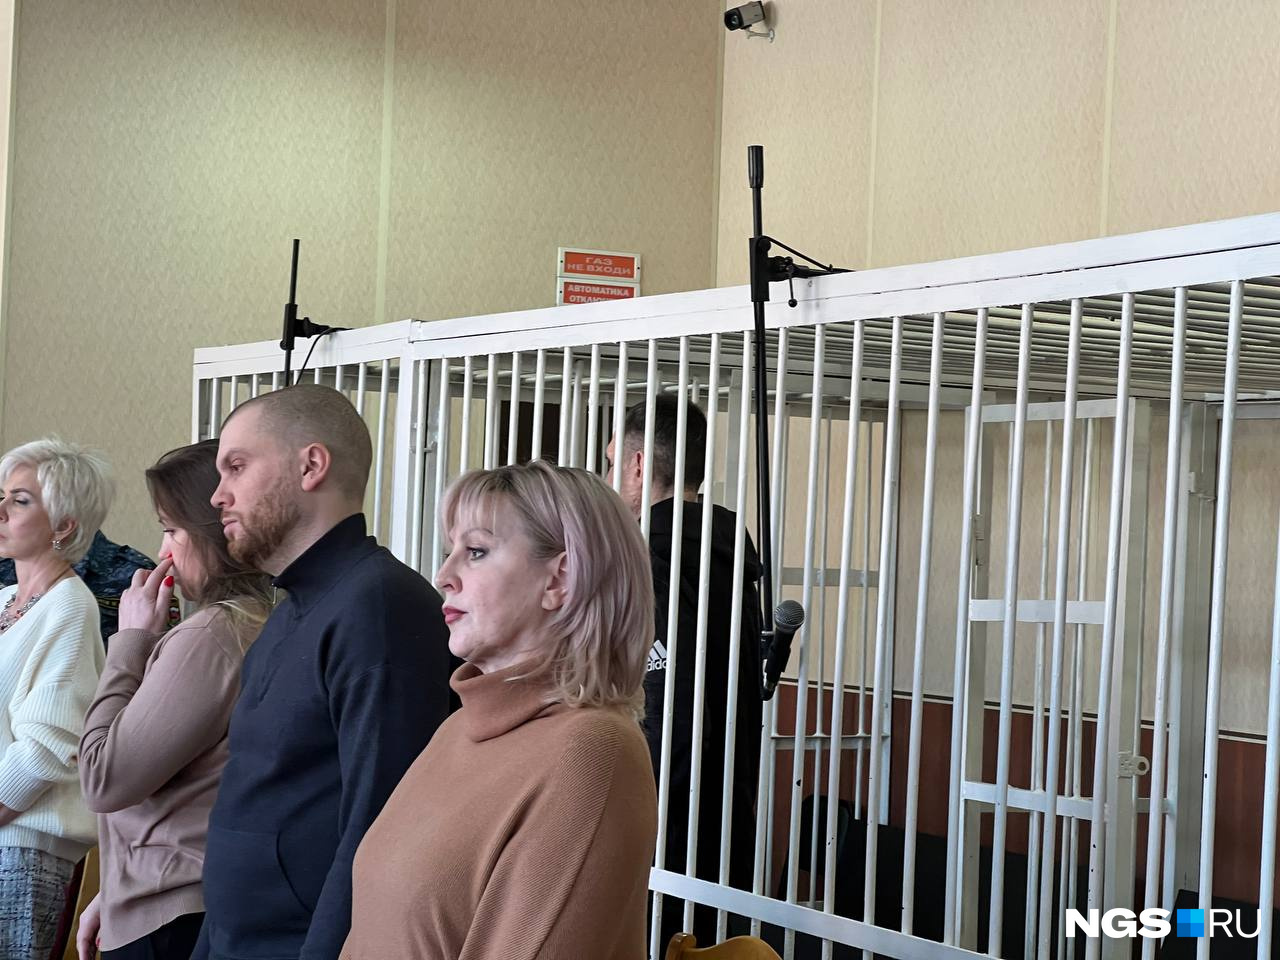 Денис Басов (на заднем плане, в клетке) оказался под стражей из-за того, что очень вольно вел себя под домашним арестом. В итоге он тоже получил условный срок